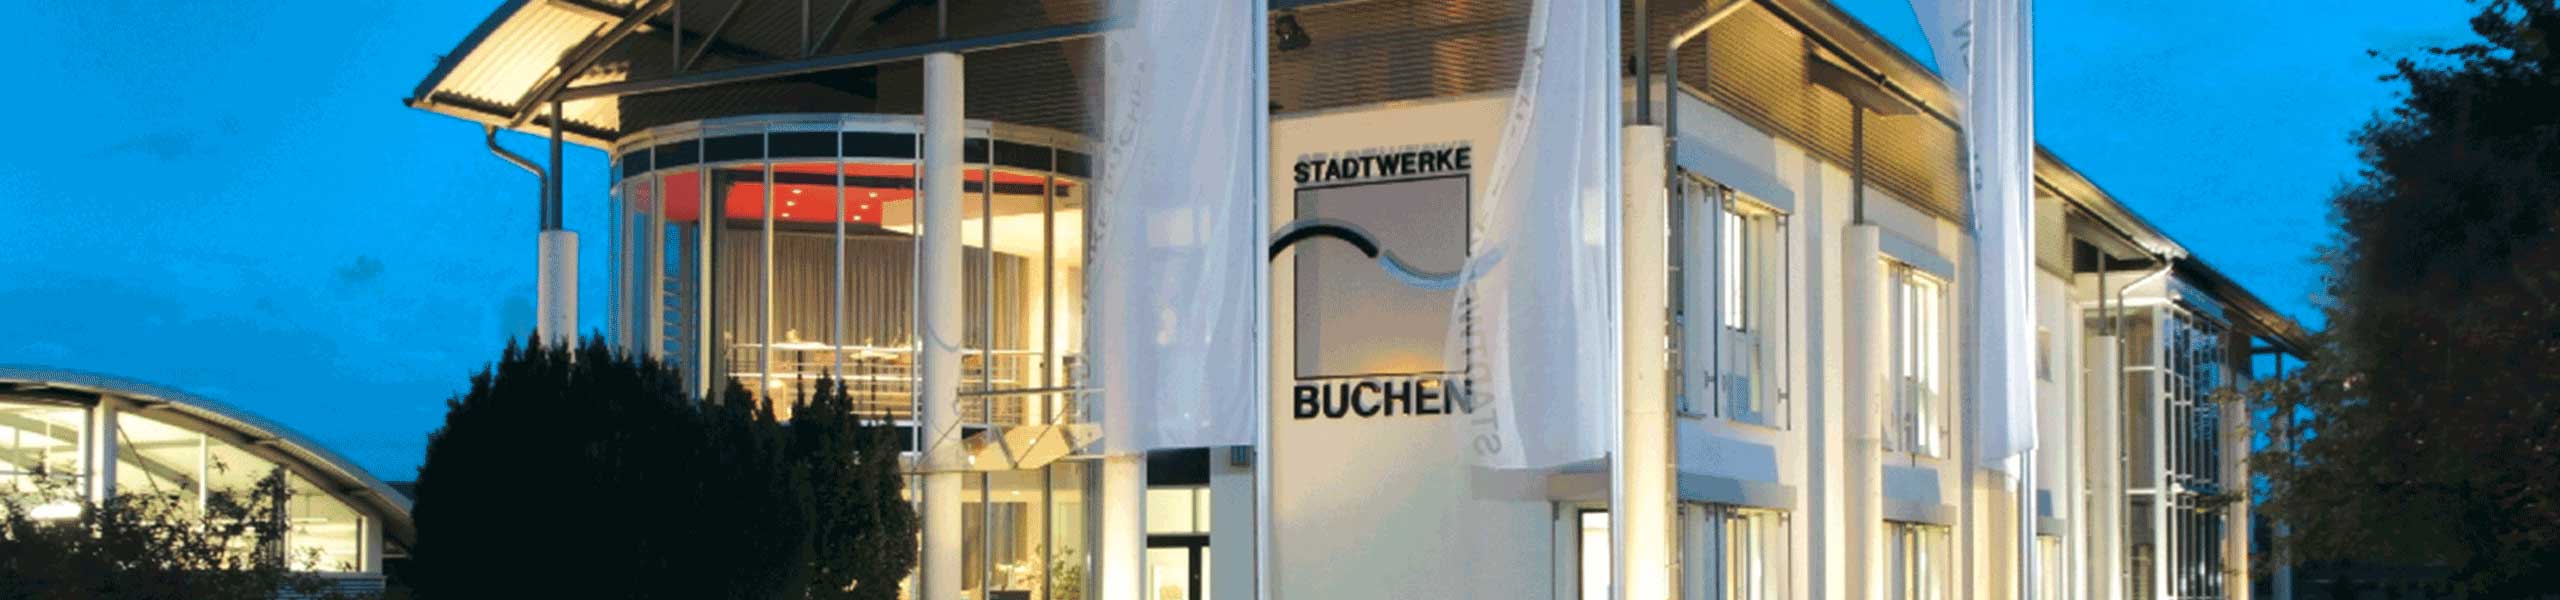 Stadtwerke Buchen GmbH & Co KG - Ihr Versorger vor Ort - Weltwassertag 2022: In diesem Jahr steht er unter dem Motto 